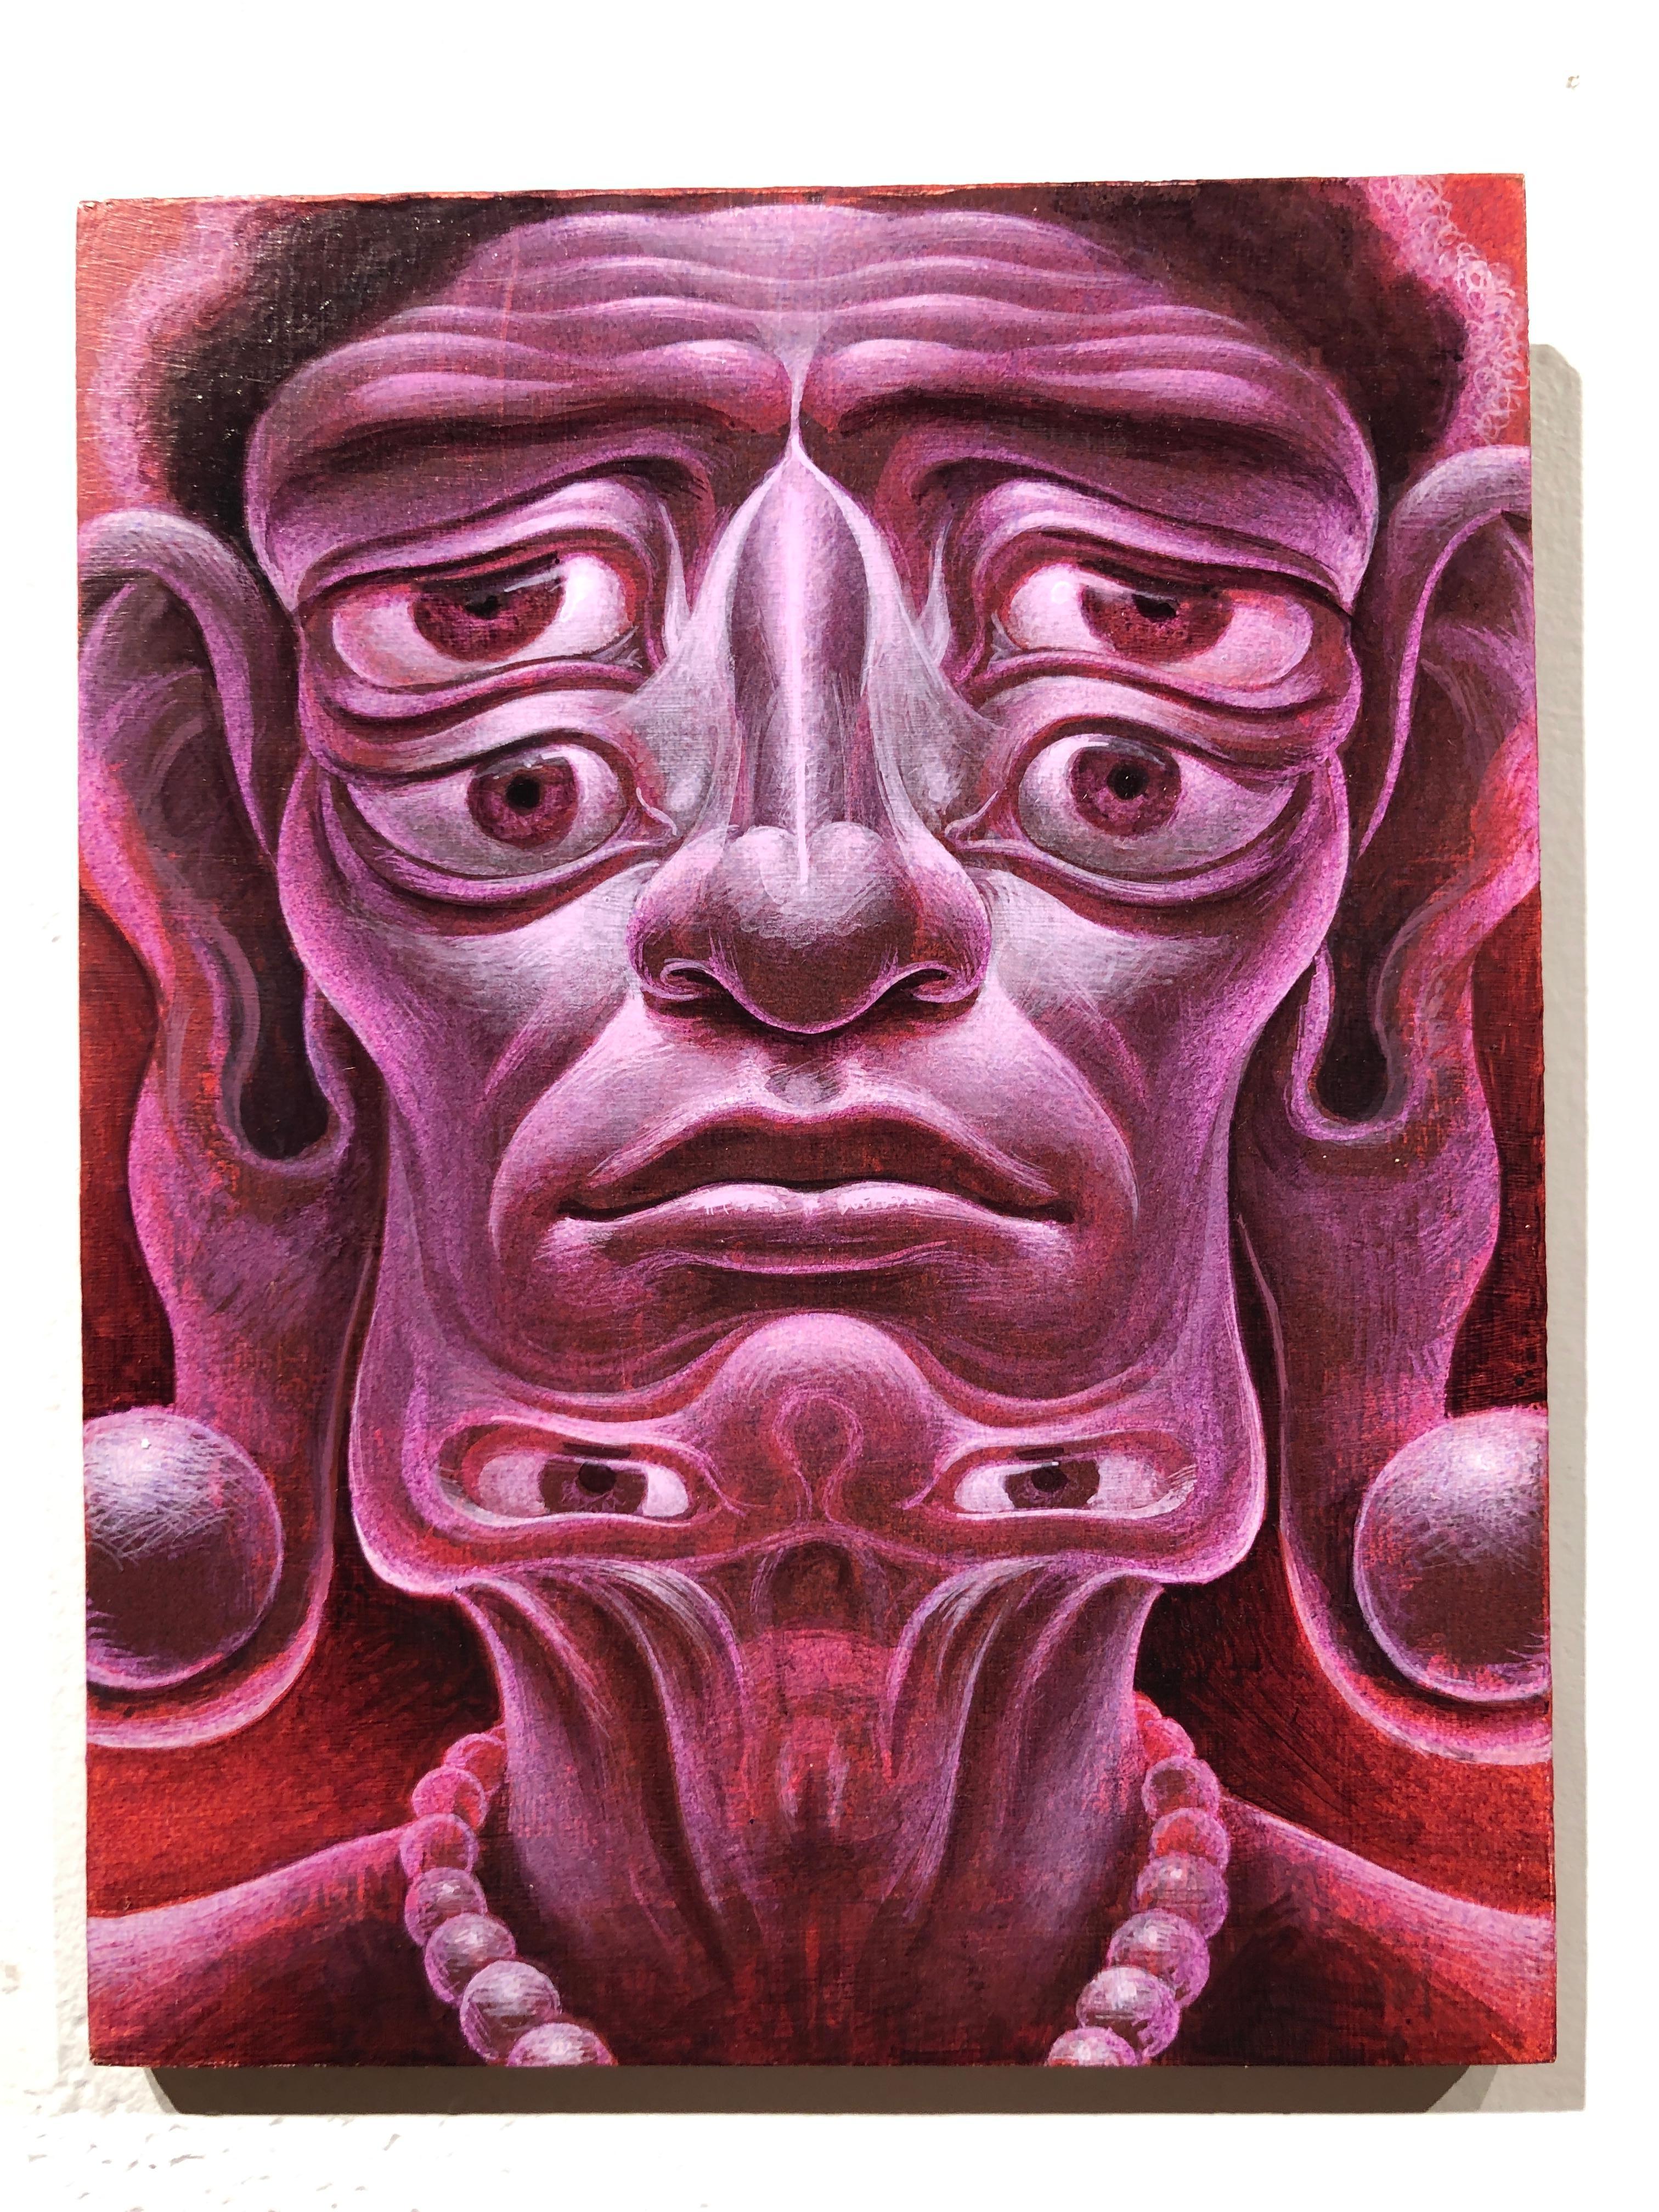 Totemic Arhat - Figure bouddhiste surréaliste de l'illumination, acrylique sur panneau - Painting de Oliver Hazard Benson